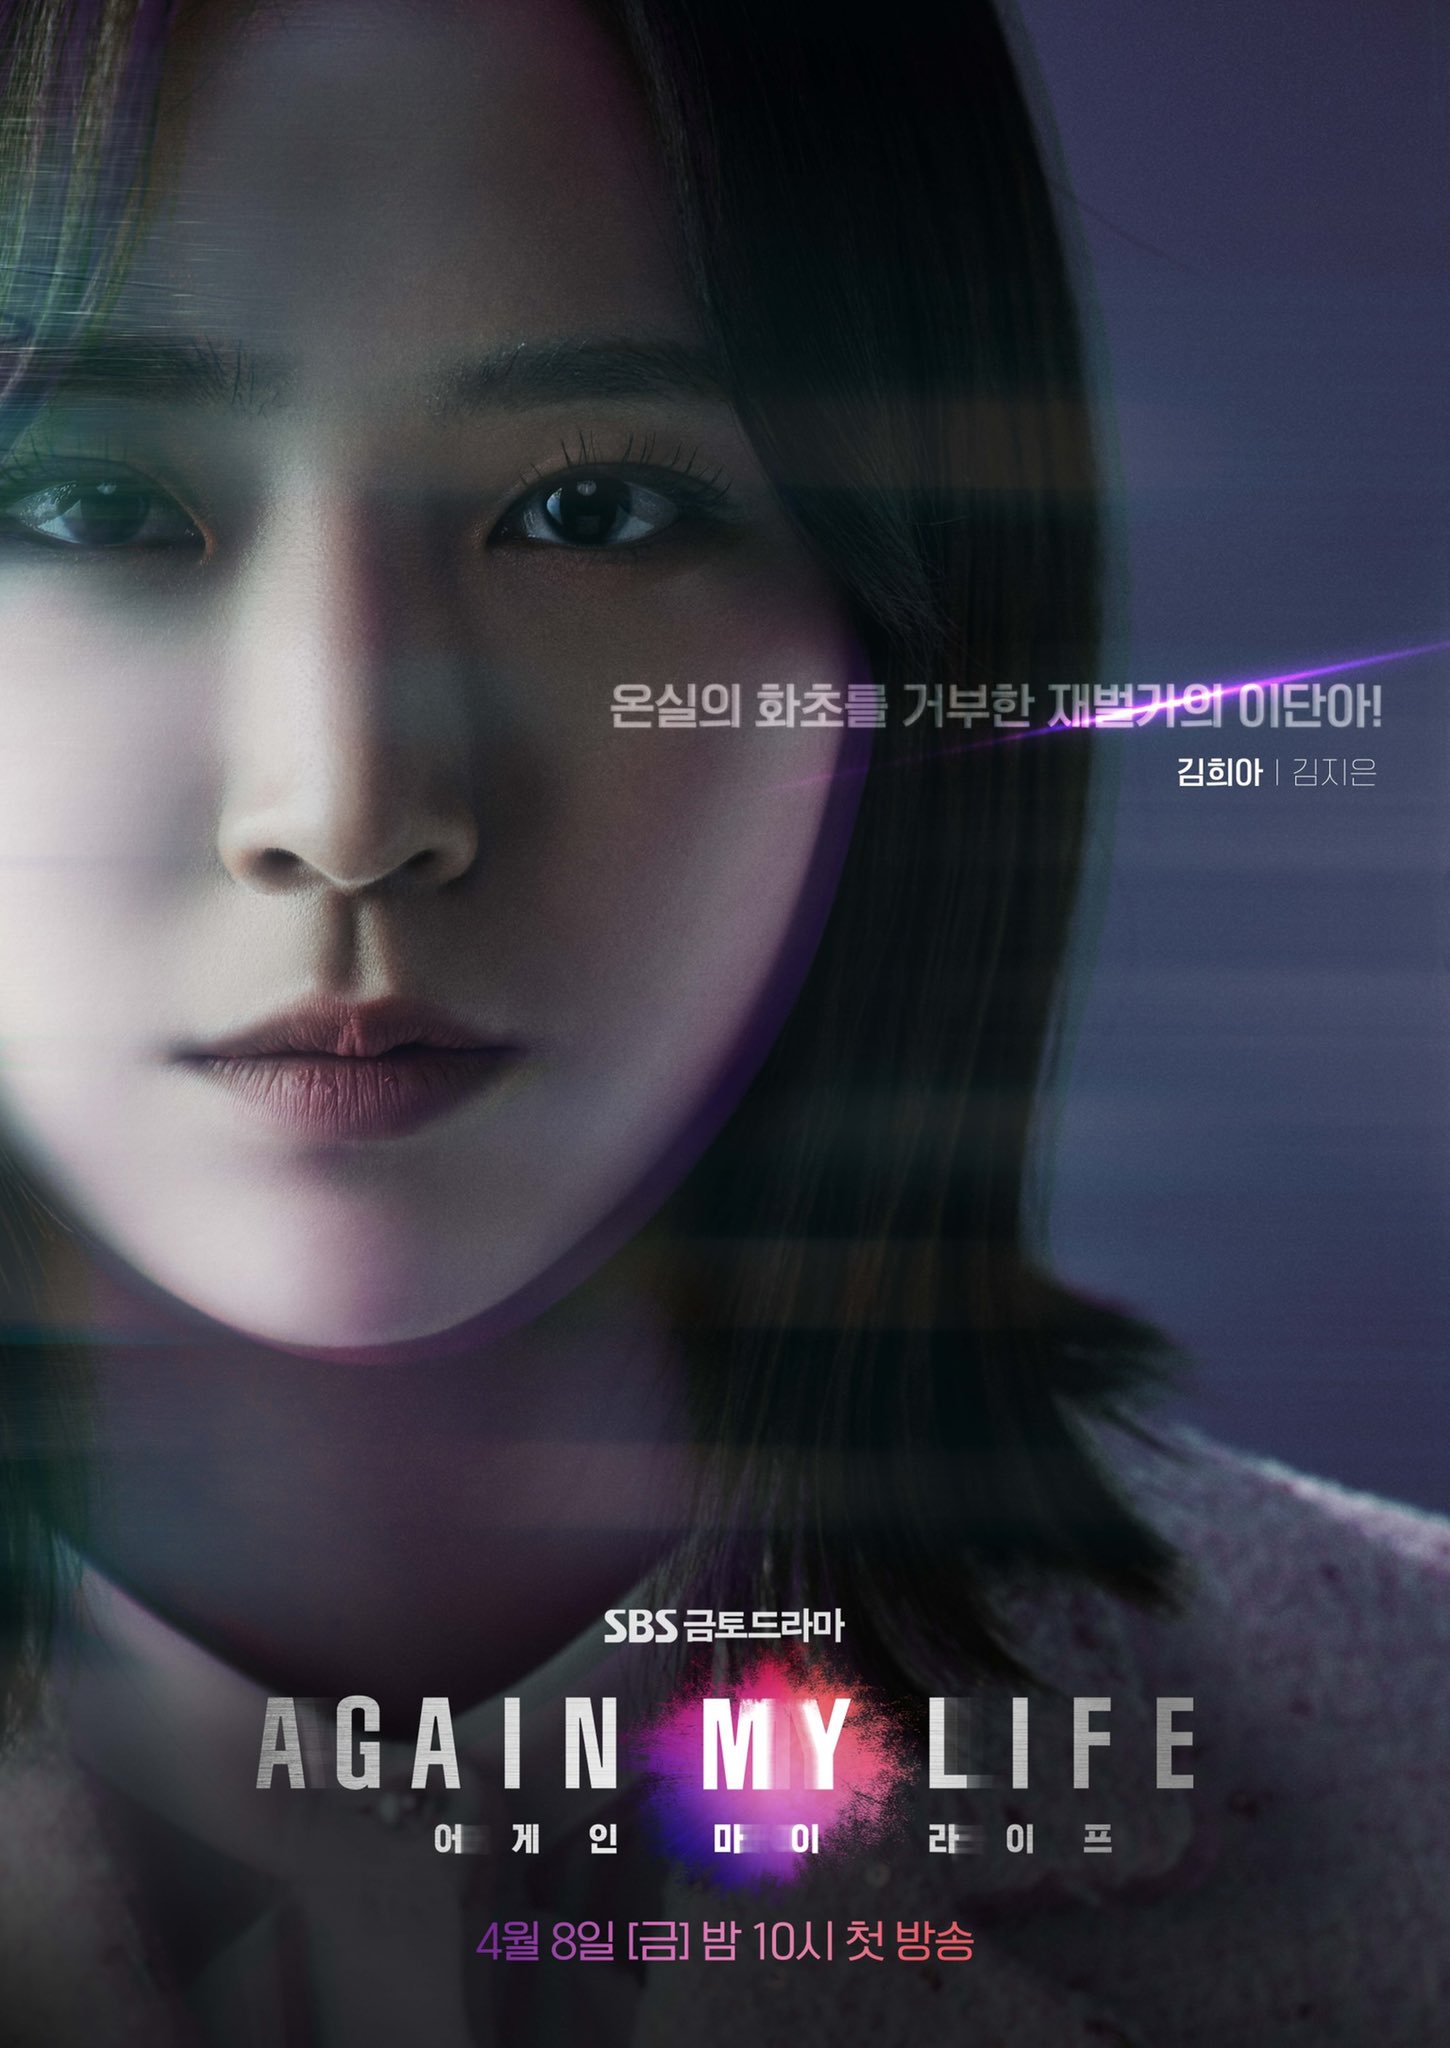 Lee Joon Gi, Kim Jae Kyung de Rainbow y más tienen algo que demostrar en el nuevo drama de venganza “Again My Life”